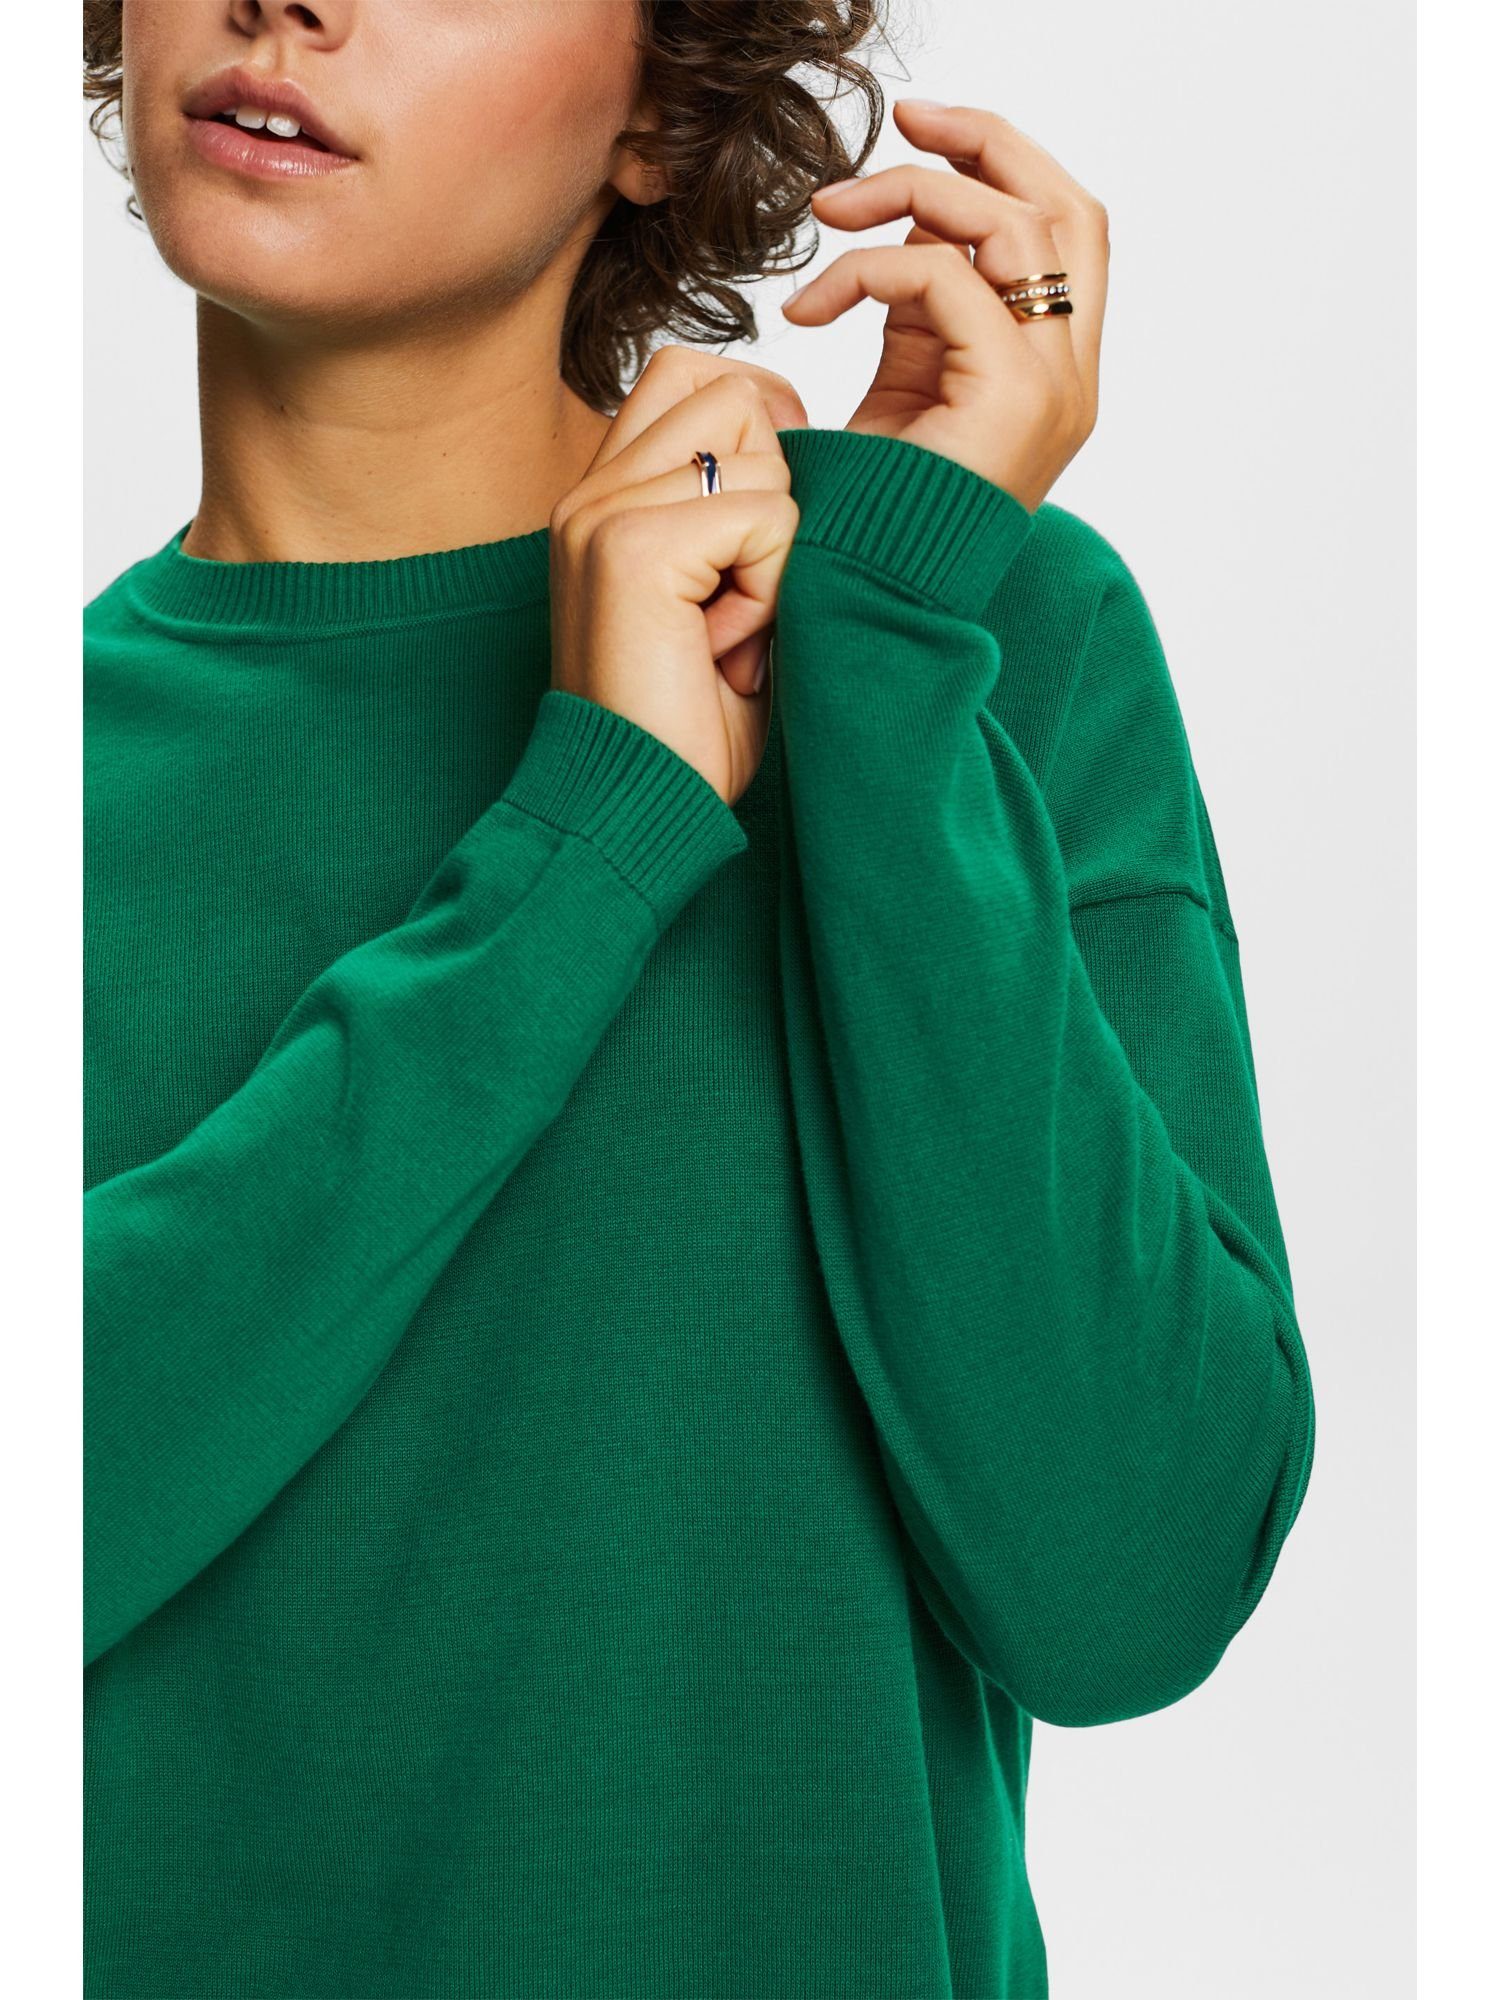 Esprit Rundhalspullover Oversize DARK GREEN Baumwolle % 100 Pullover